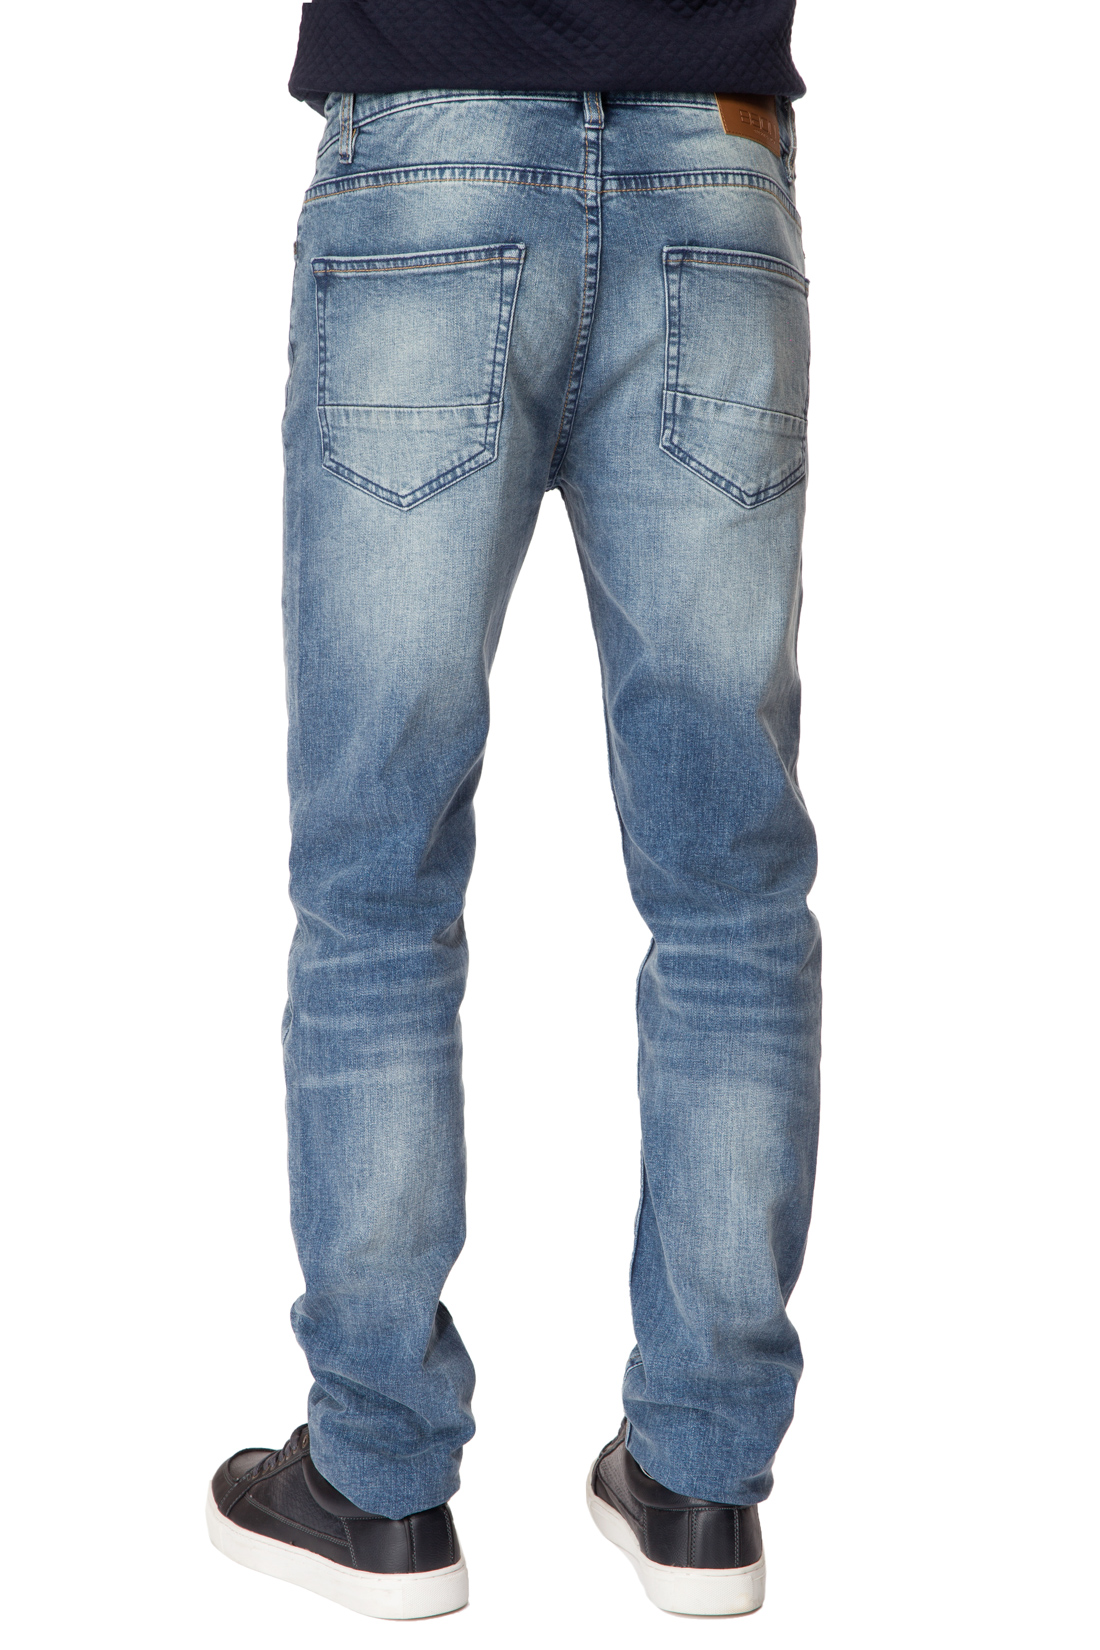 Зауженные джинсы с выбеленностями (арт. baon B807005), размер 33, цвет blue denim#голубой Зауженные джинсы с выбеленностями (арт. baon B807005) - фото 2